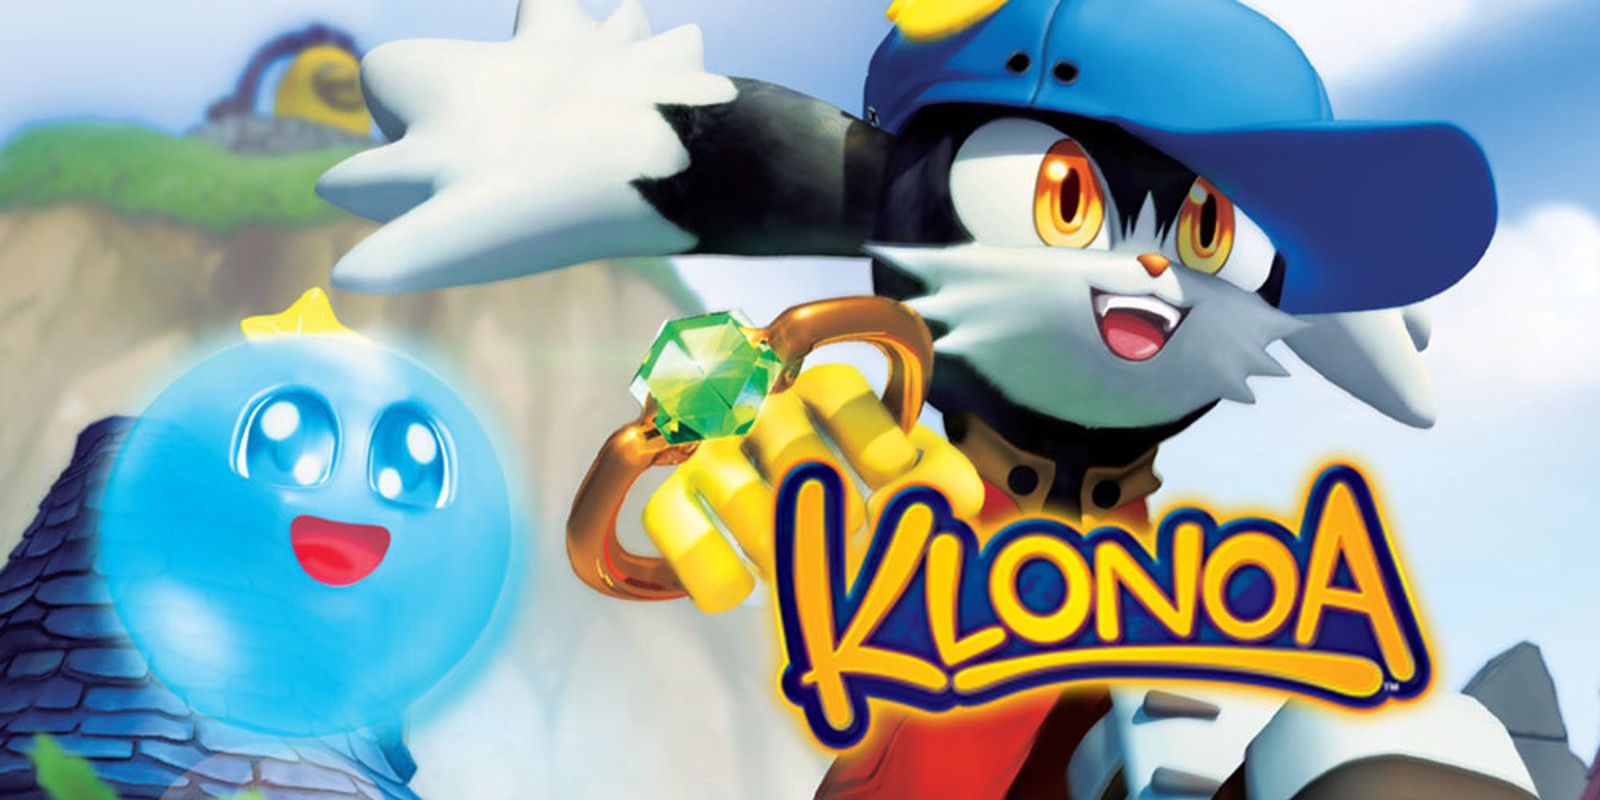 klonoa switch release date download free